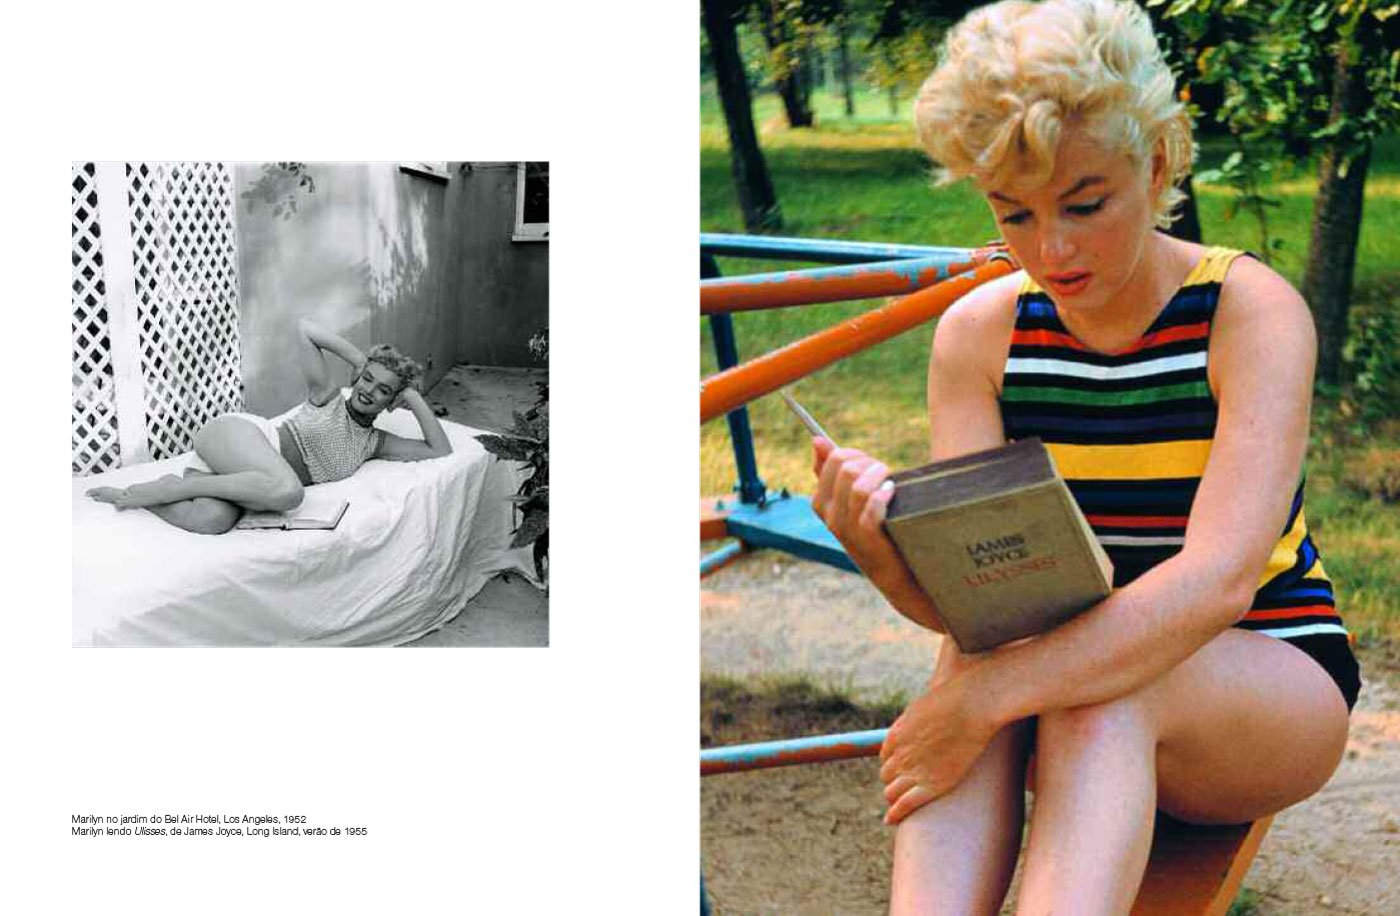 Fotos raras de Marilyn Monroe revelam lado desconhecido da atriz